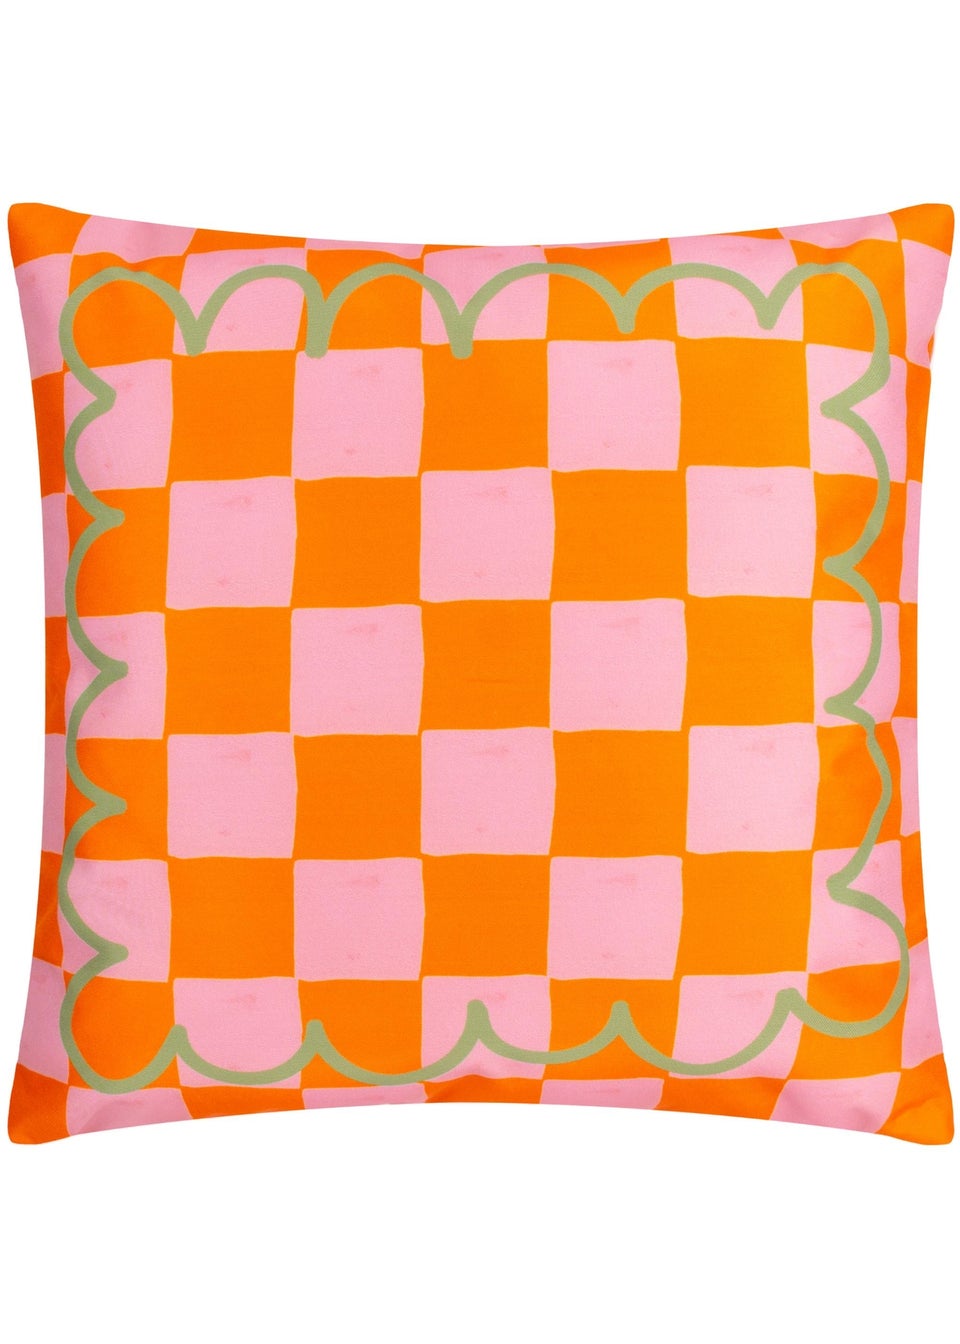 furn. Oranges Filled Outdoor Cushion (43cm x 43cm x 8cm)